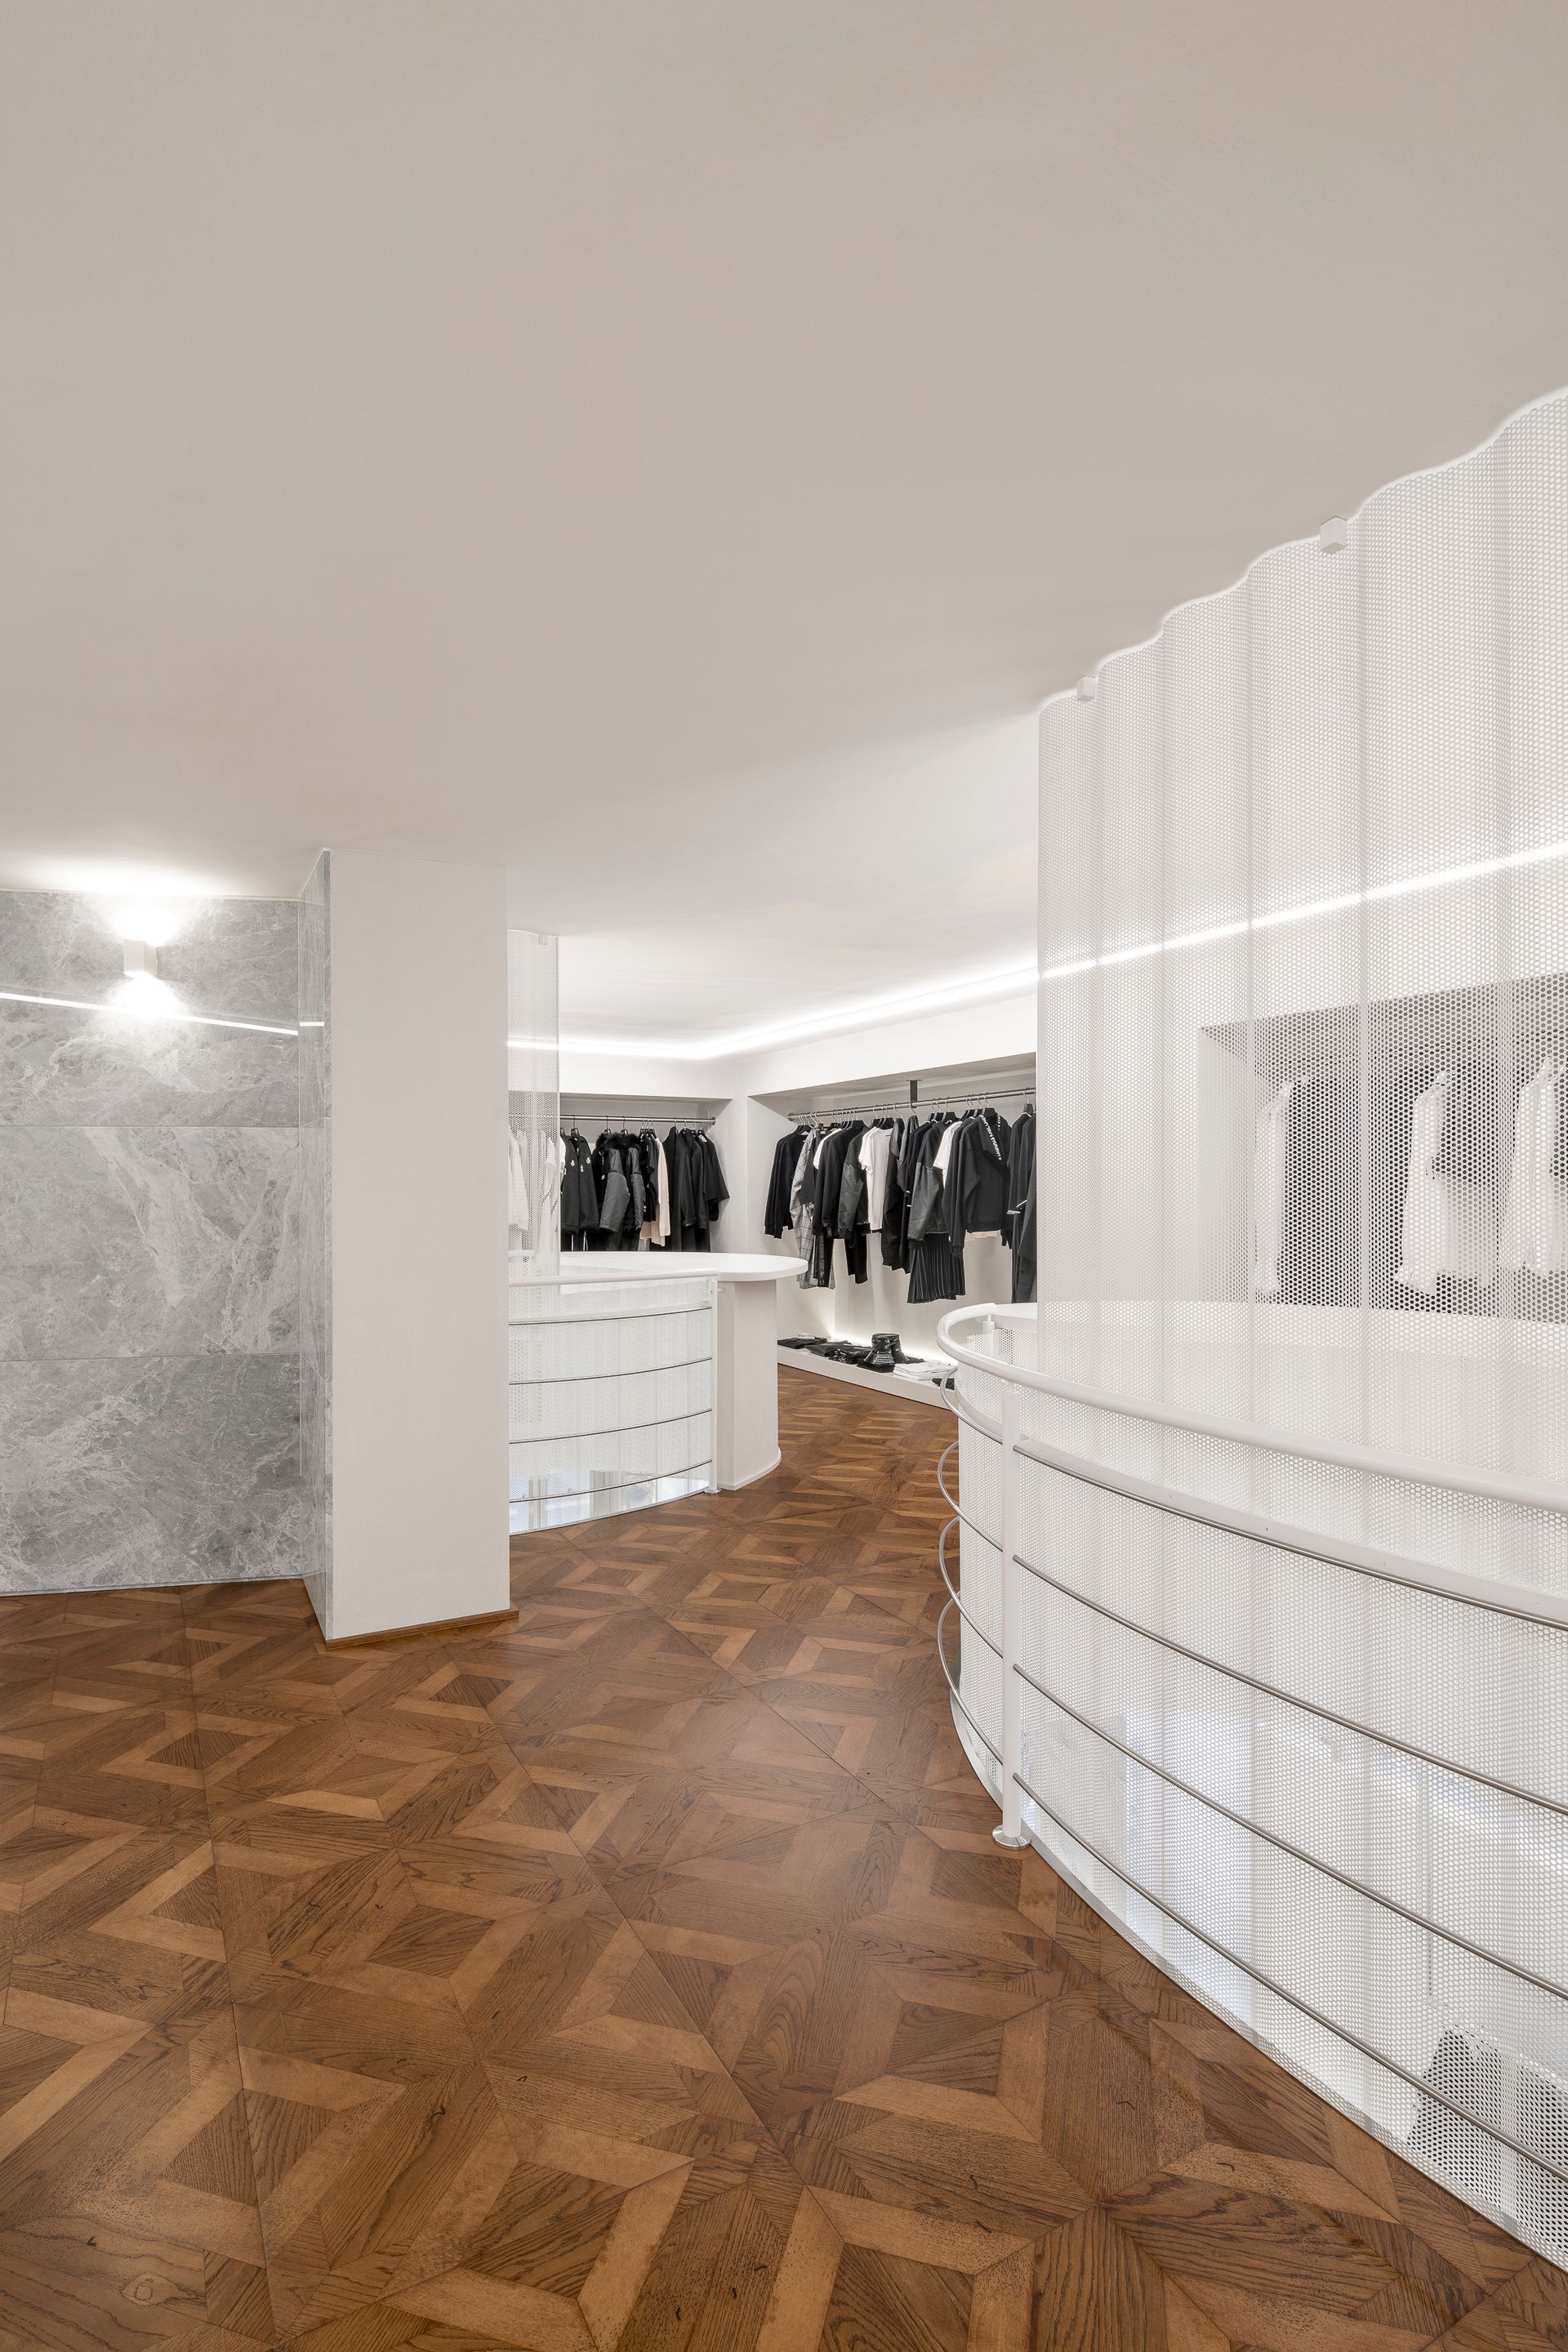 Progetto interior design, ristrutturazione e rebranding di boutique Corbù +ME moda lusso Bergamo, Milano, Lago di Como, Londra, New York, Parigi. Officina Magisafi - parquet